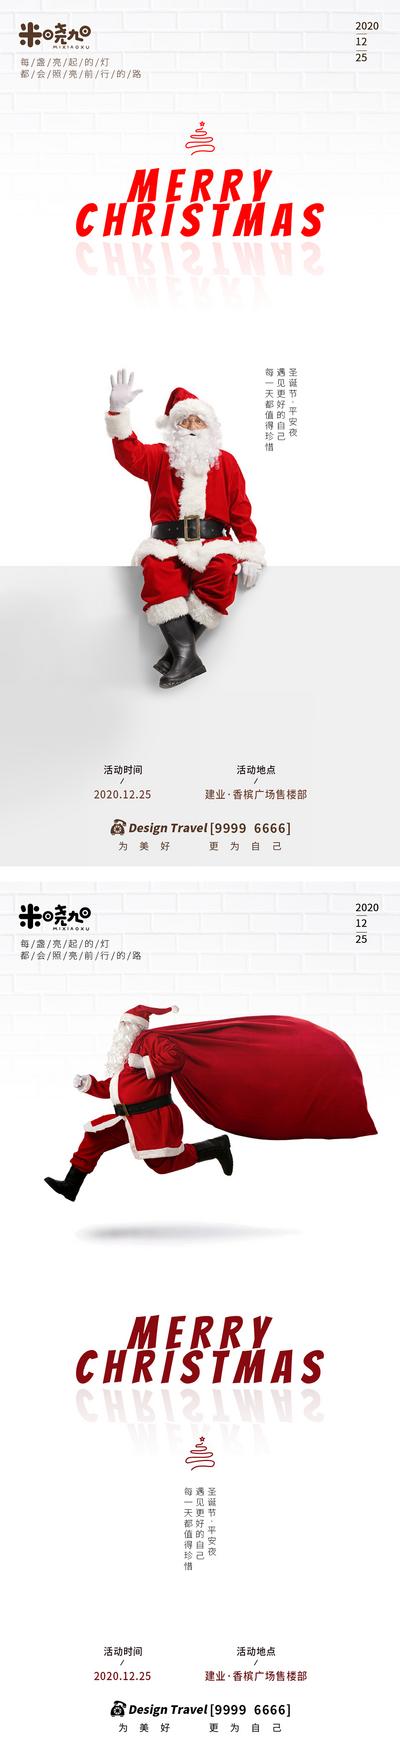 南门网 广告 海报 地产 圣诞节 节日 系列 商业 简约 大气 时尚 红色 圣诞老人 纹理 砖纹 西方